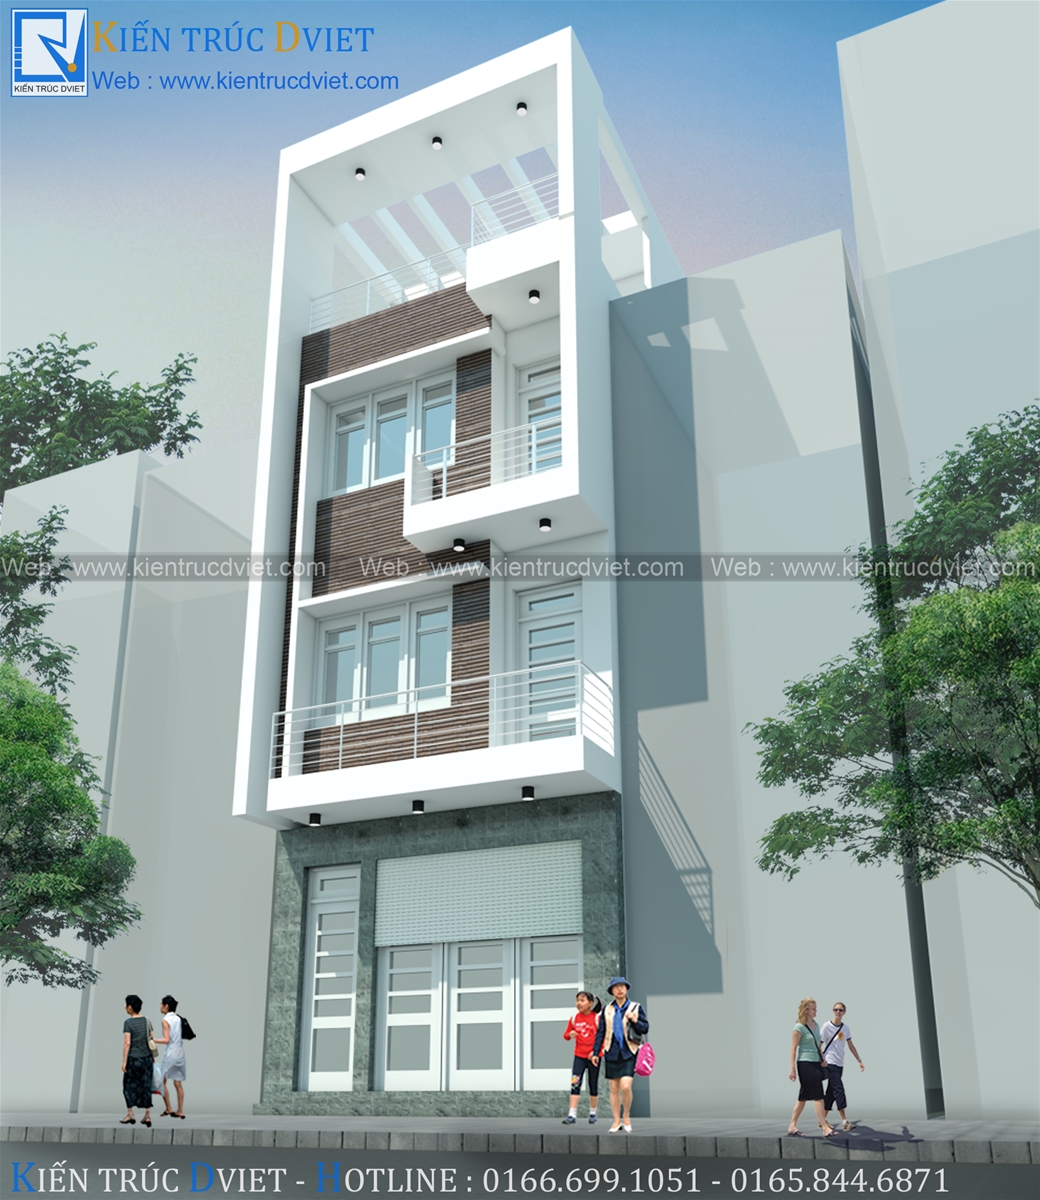 Tư vấn mẫu nhà phố 2 tầng 5x10m tối ưu công năng